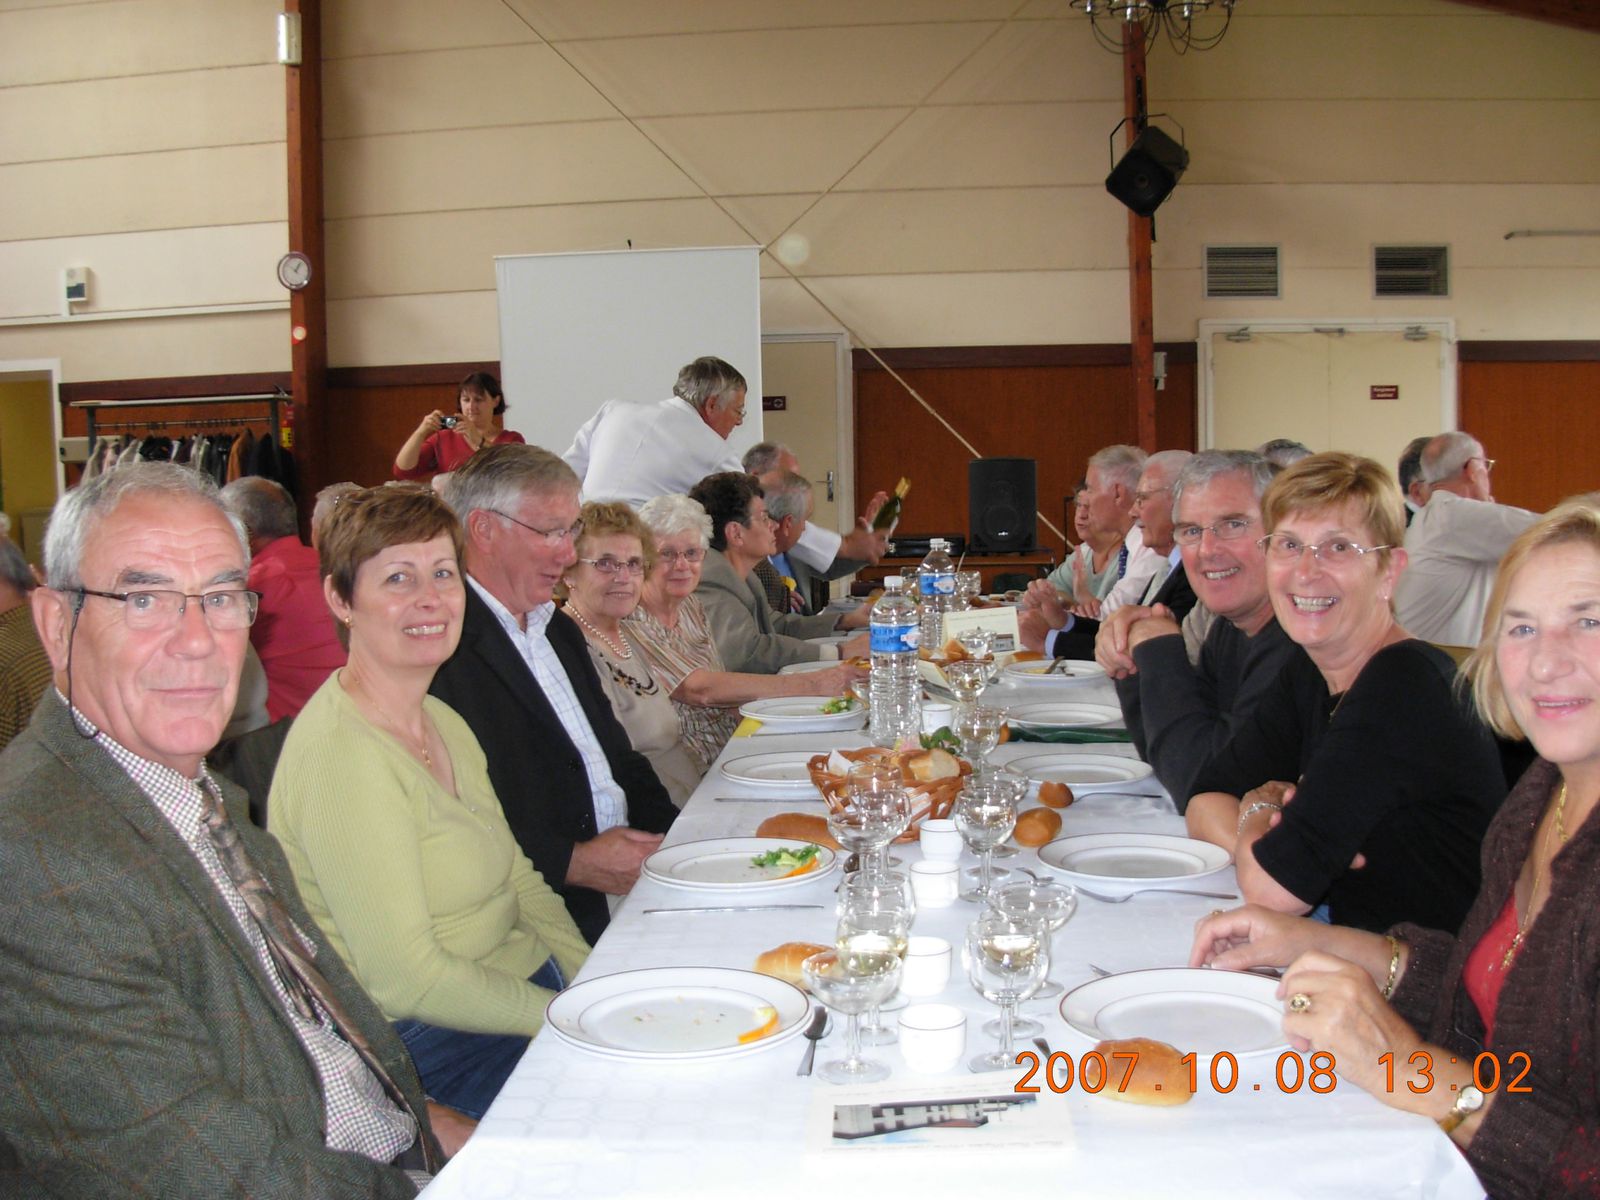 Album - centre Progobain, réunion des anciens élèves en 2007 à Thourotte (Oise)